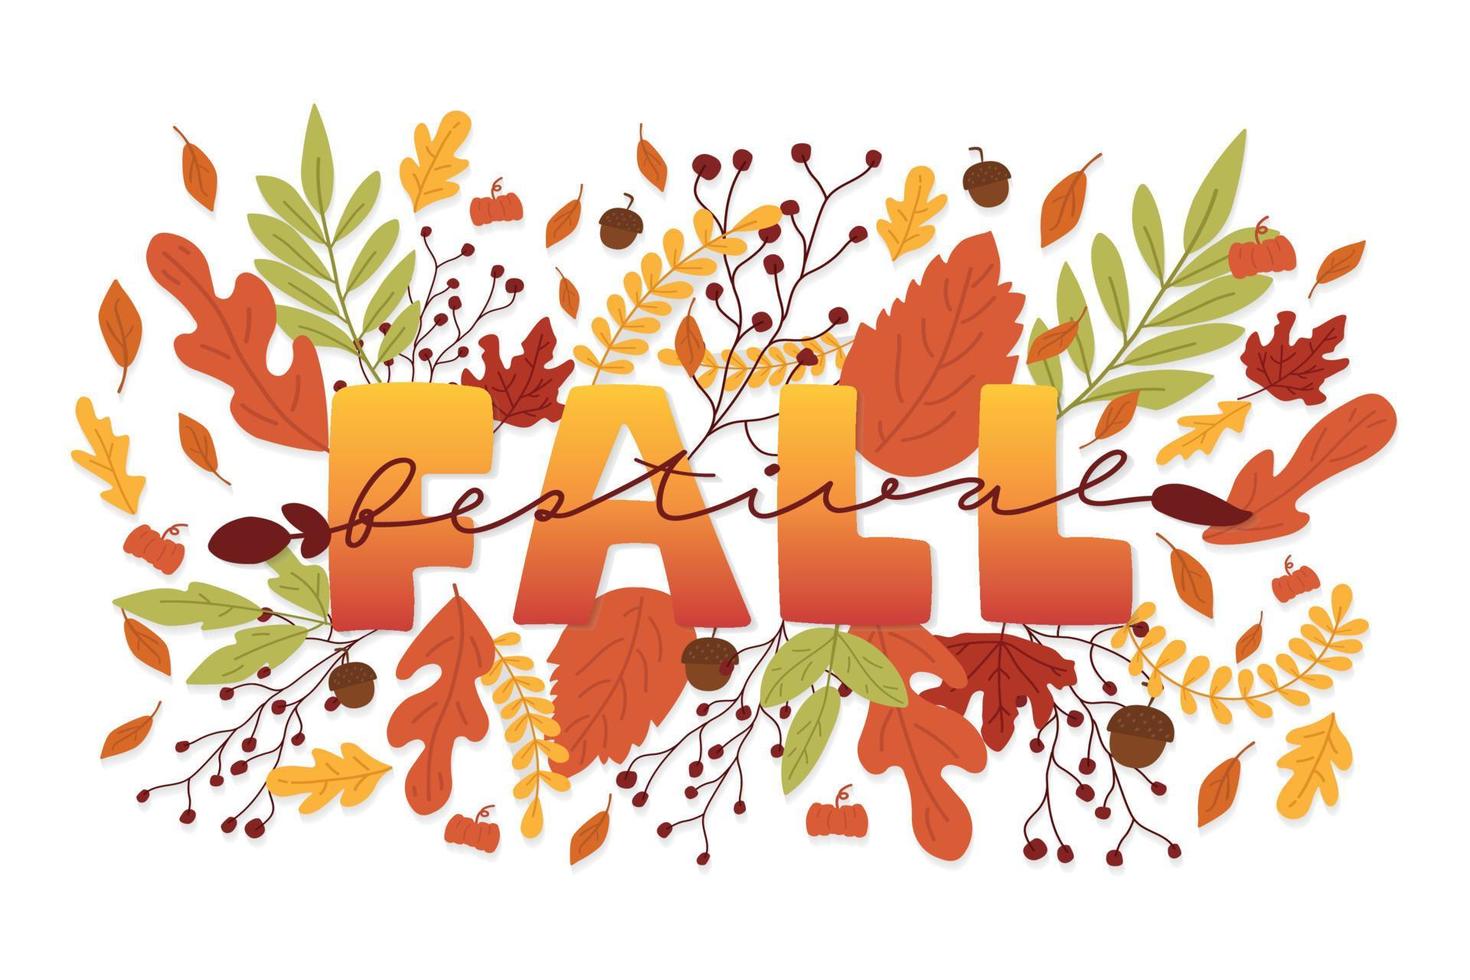 festival d'automne mot écrit à la main et fond de feuilles d'automne. feuille d'automne dans le style. affiche de modèle d'illustration vectorielle. vecteur